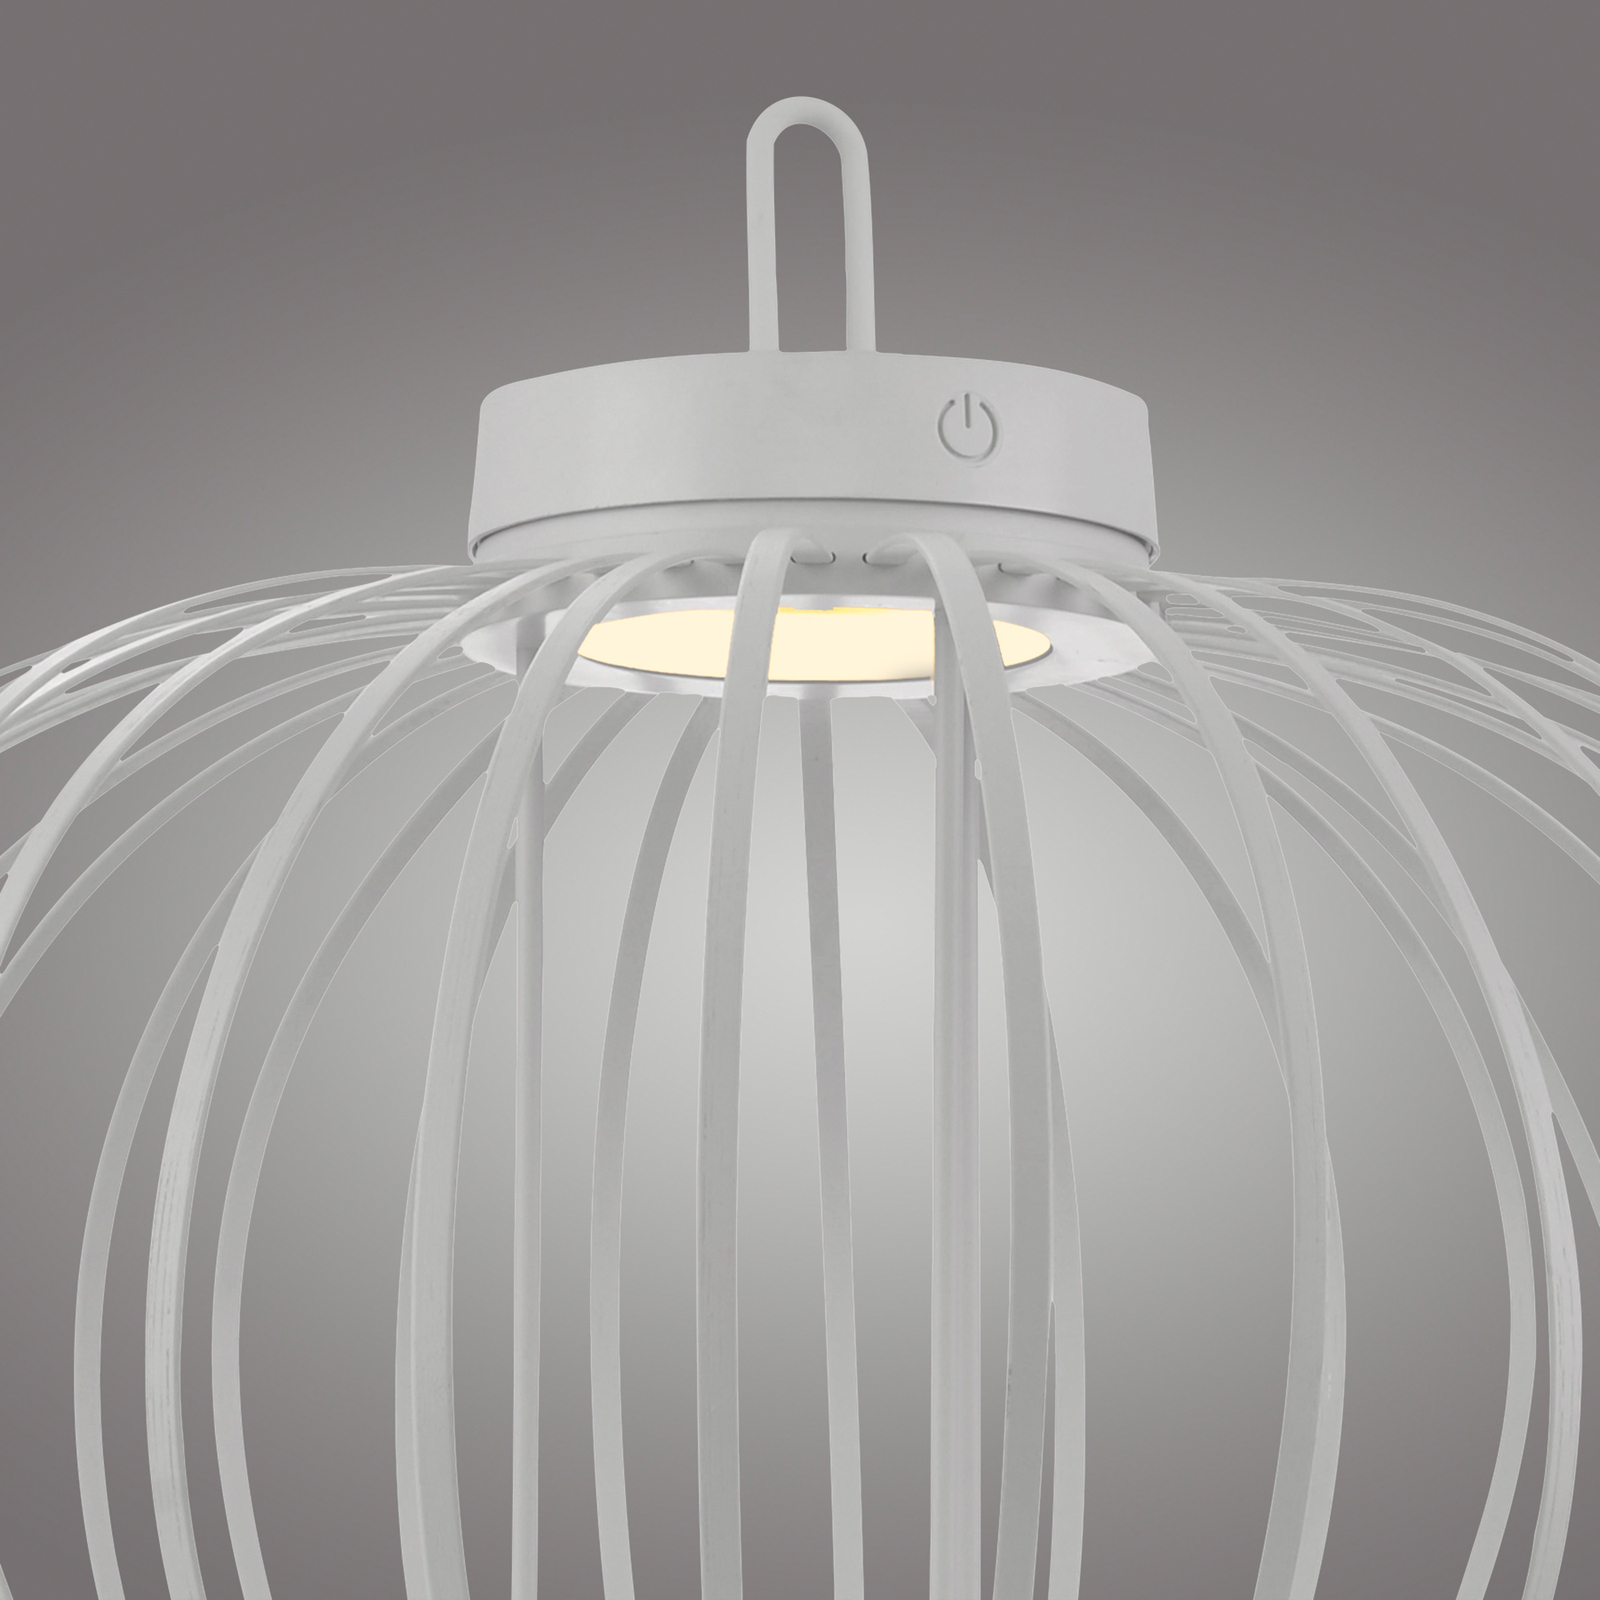 JUST LIGHT. Akuba lampa stołowa LED z akumulatorem, biała, 37 cm, bambus